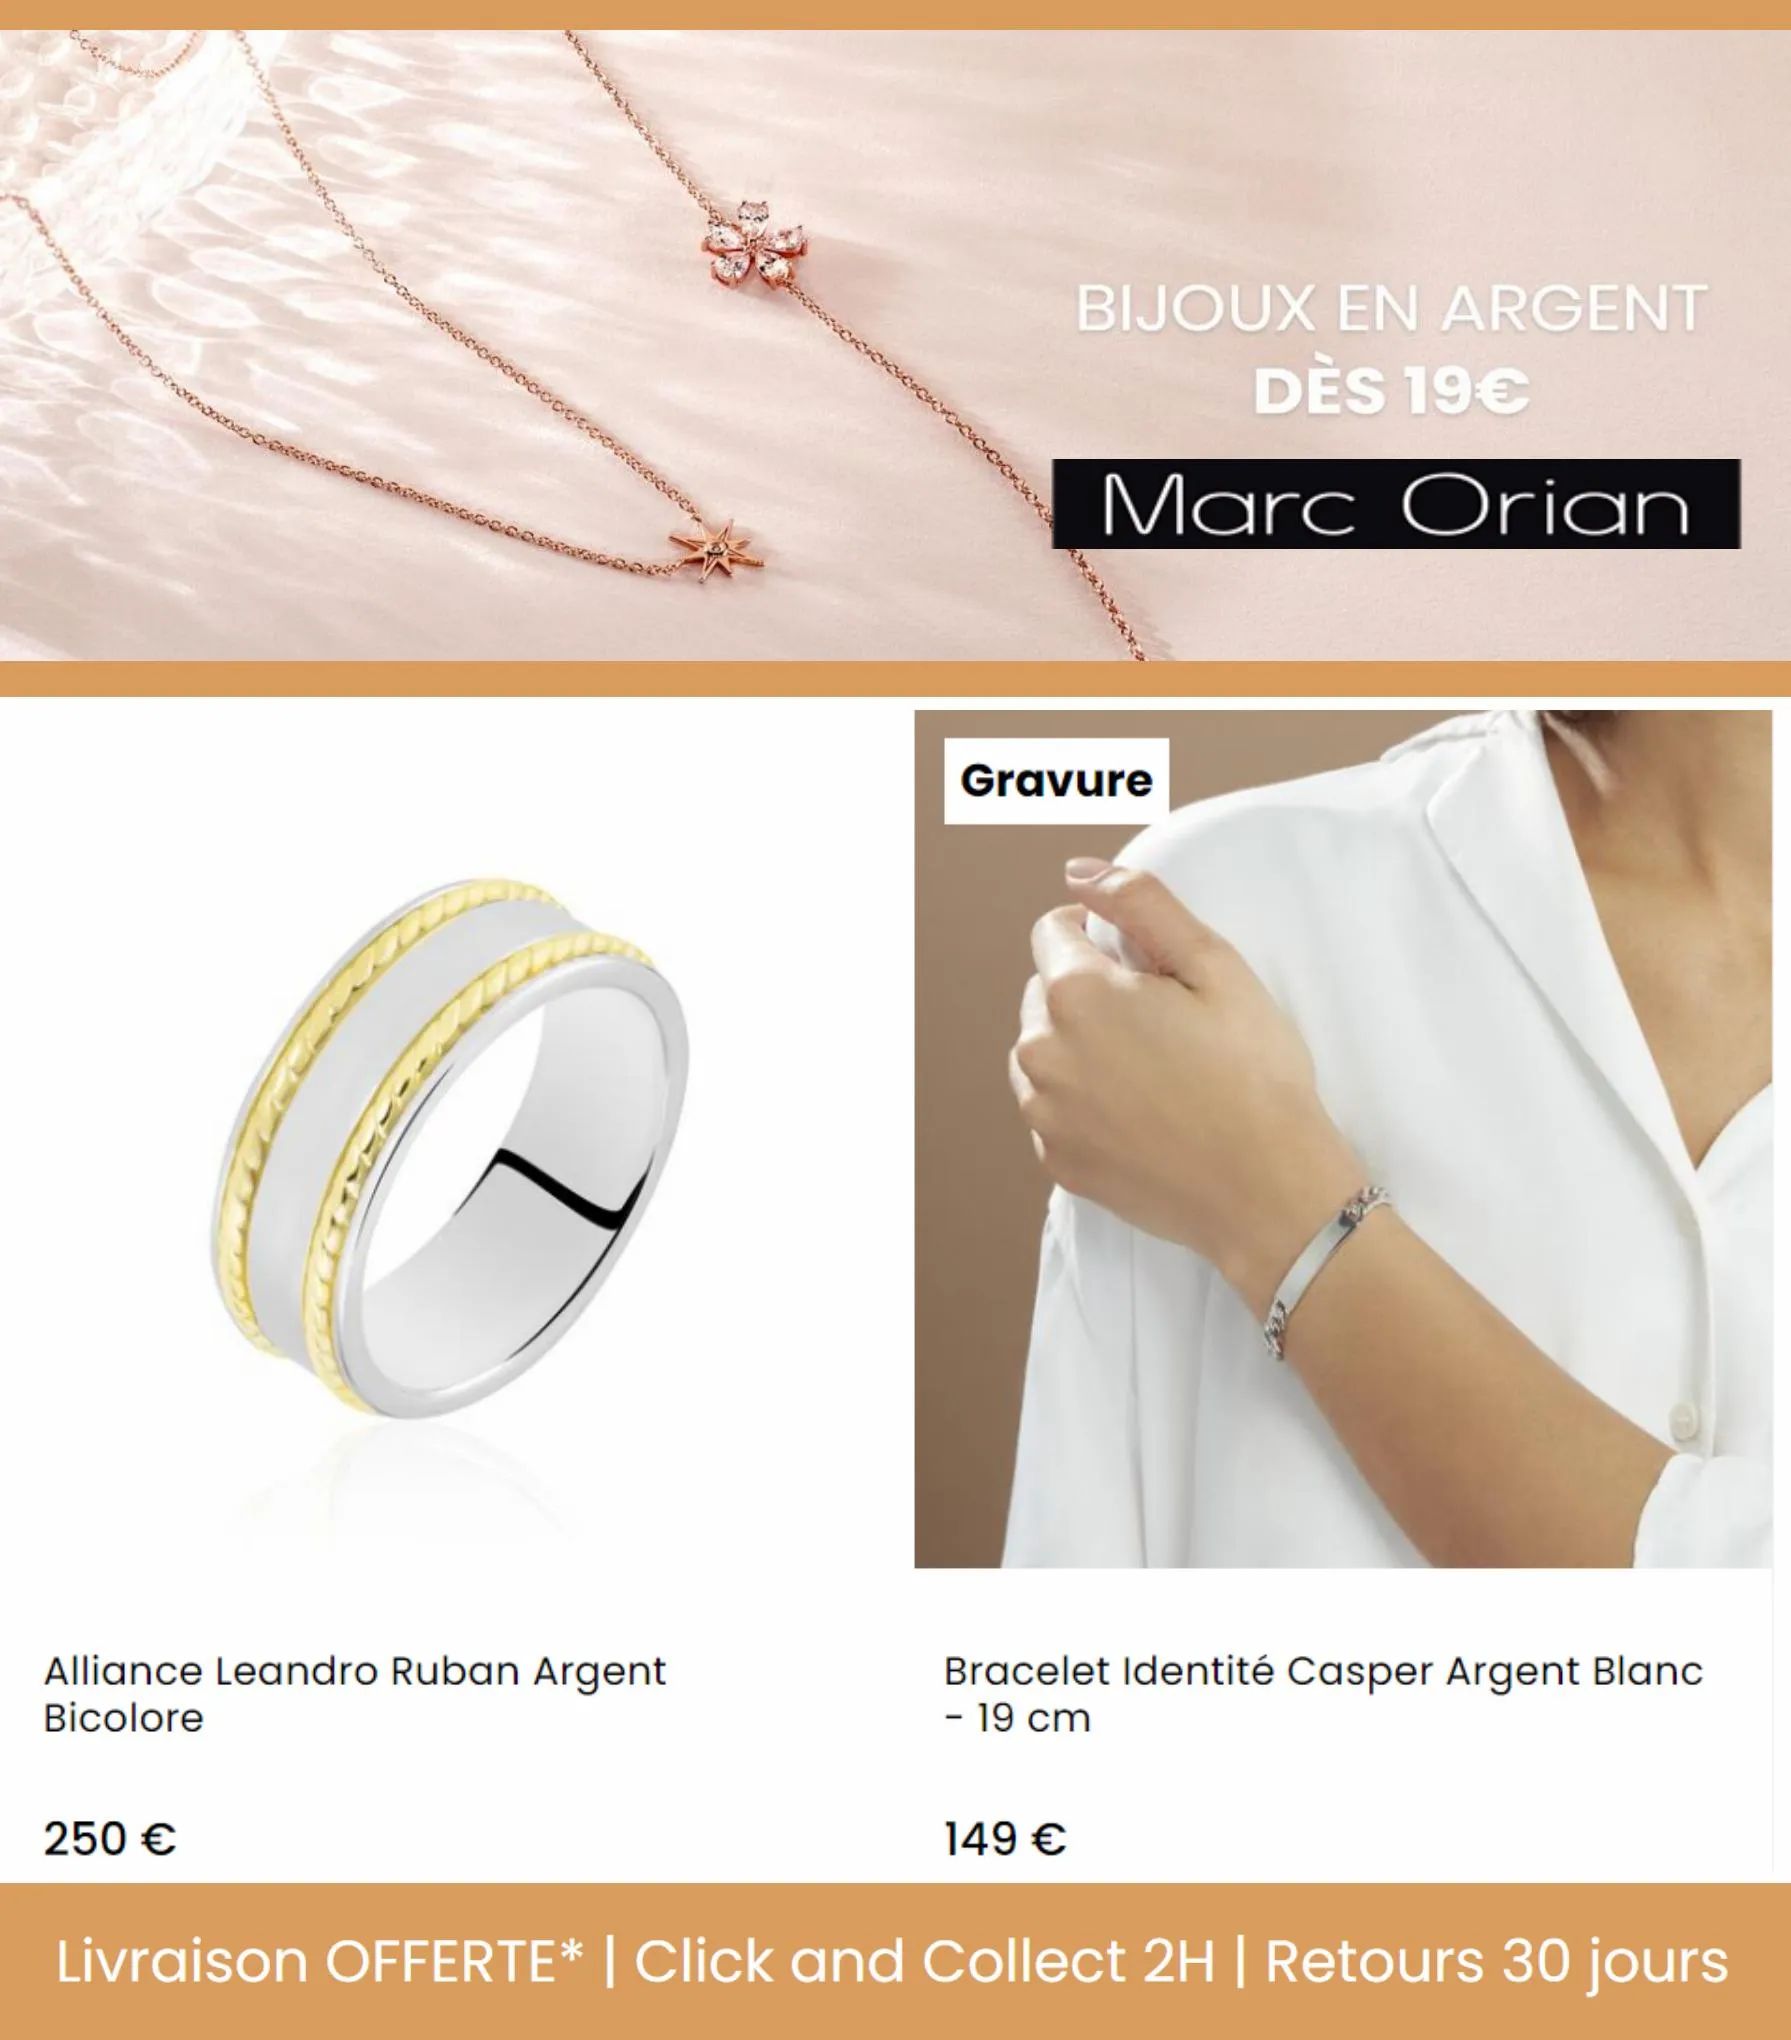 Catalogue Bijoux en Argent dès 19€, page 00006